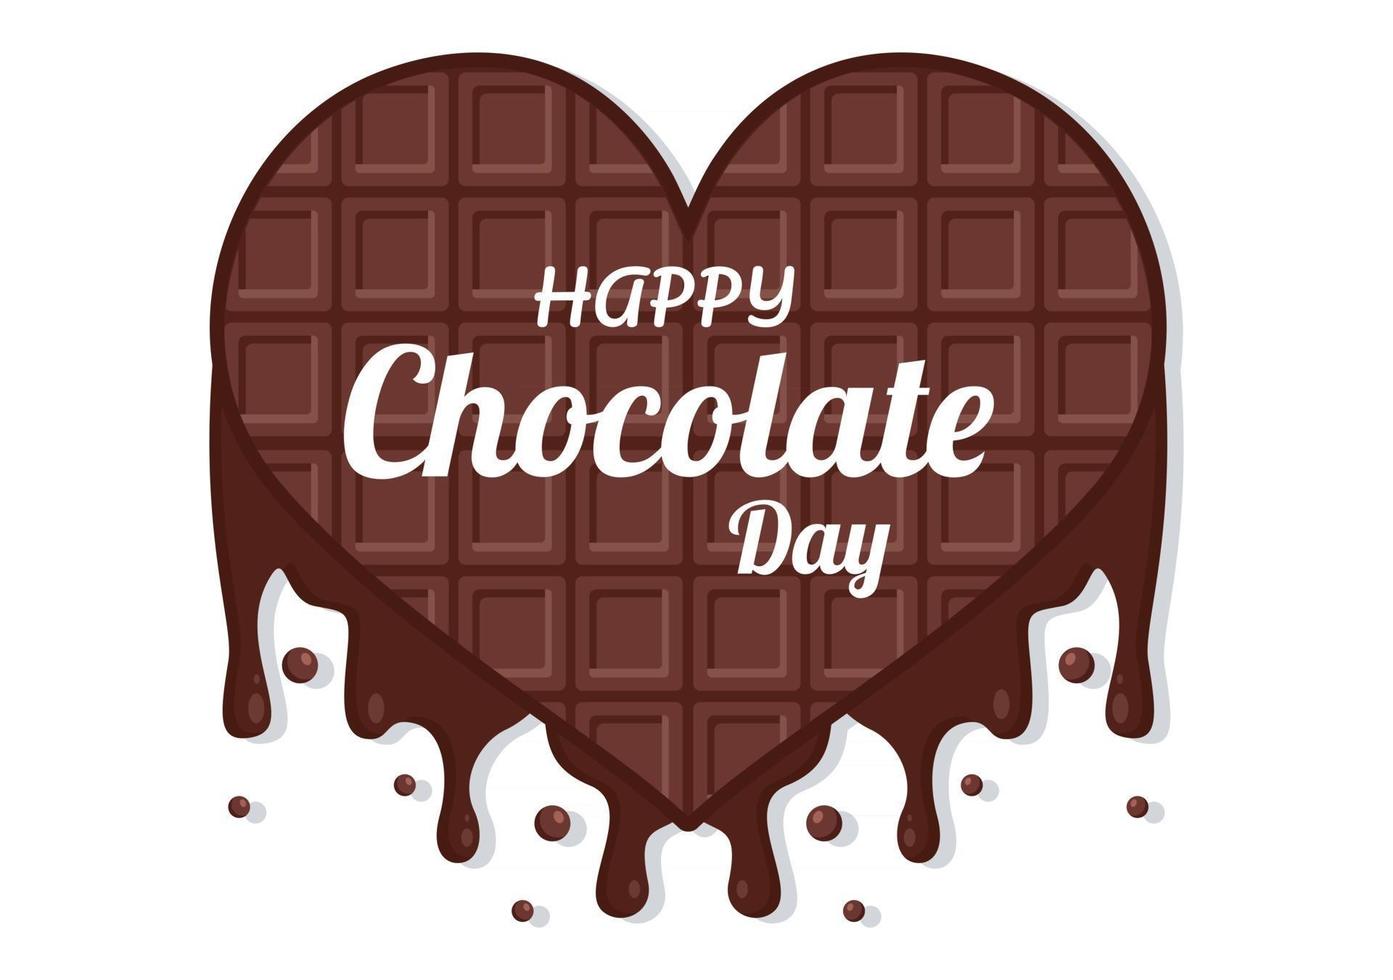 Happy Chocolate Day Celebration Vector Illustratio